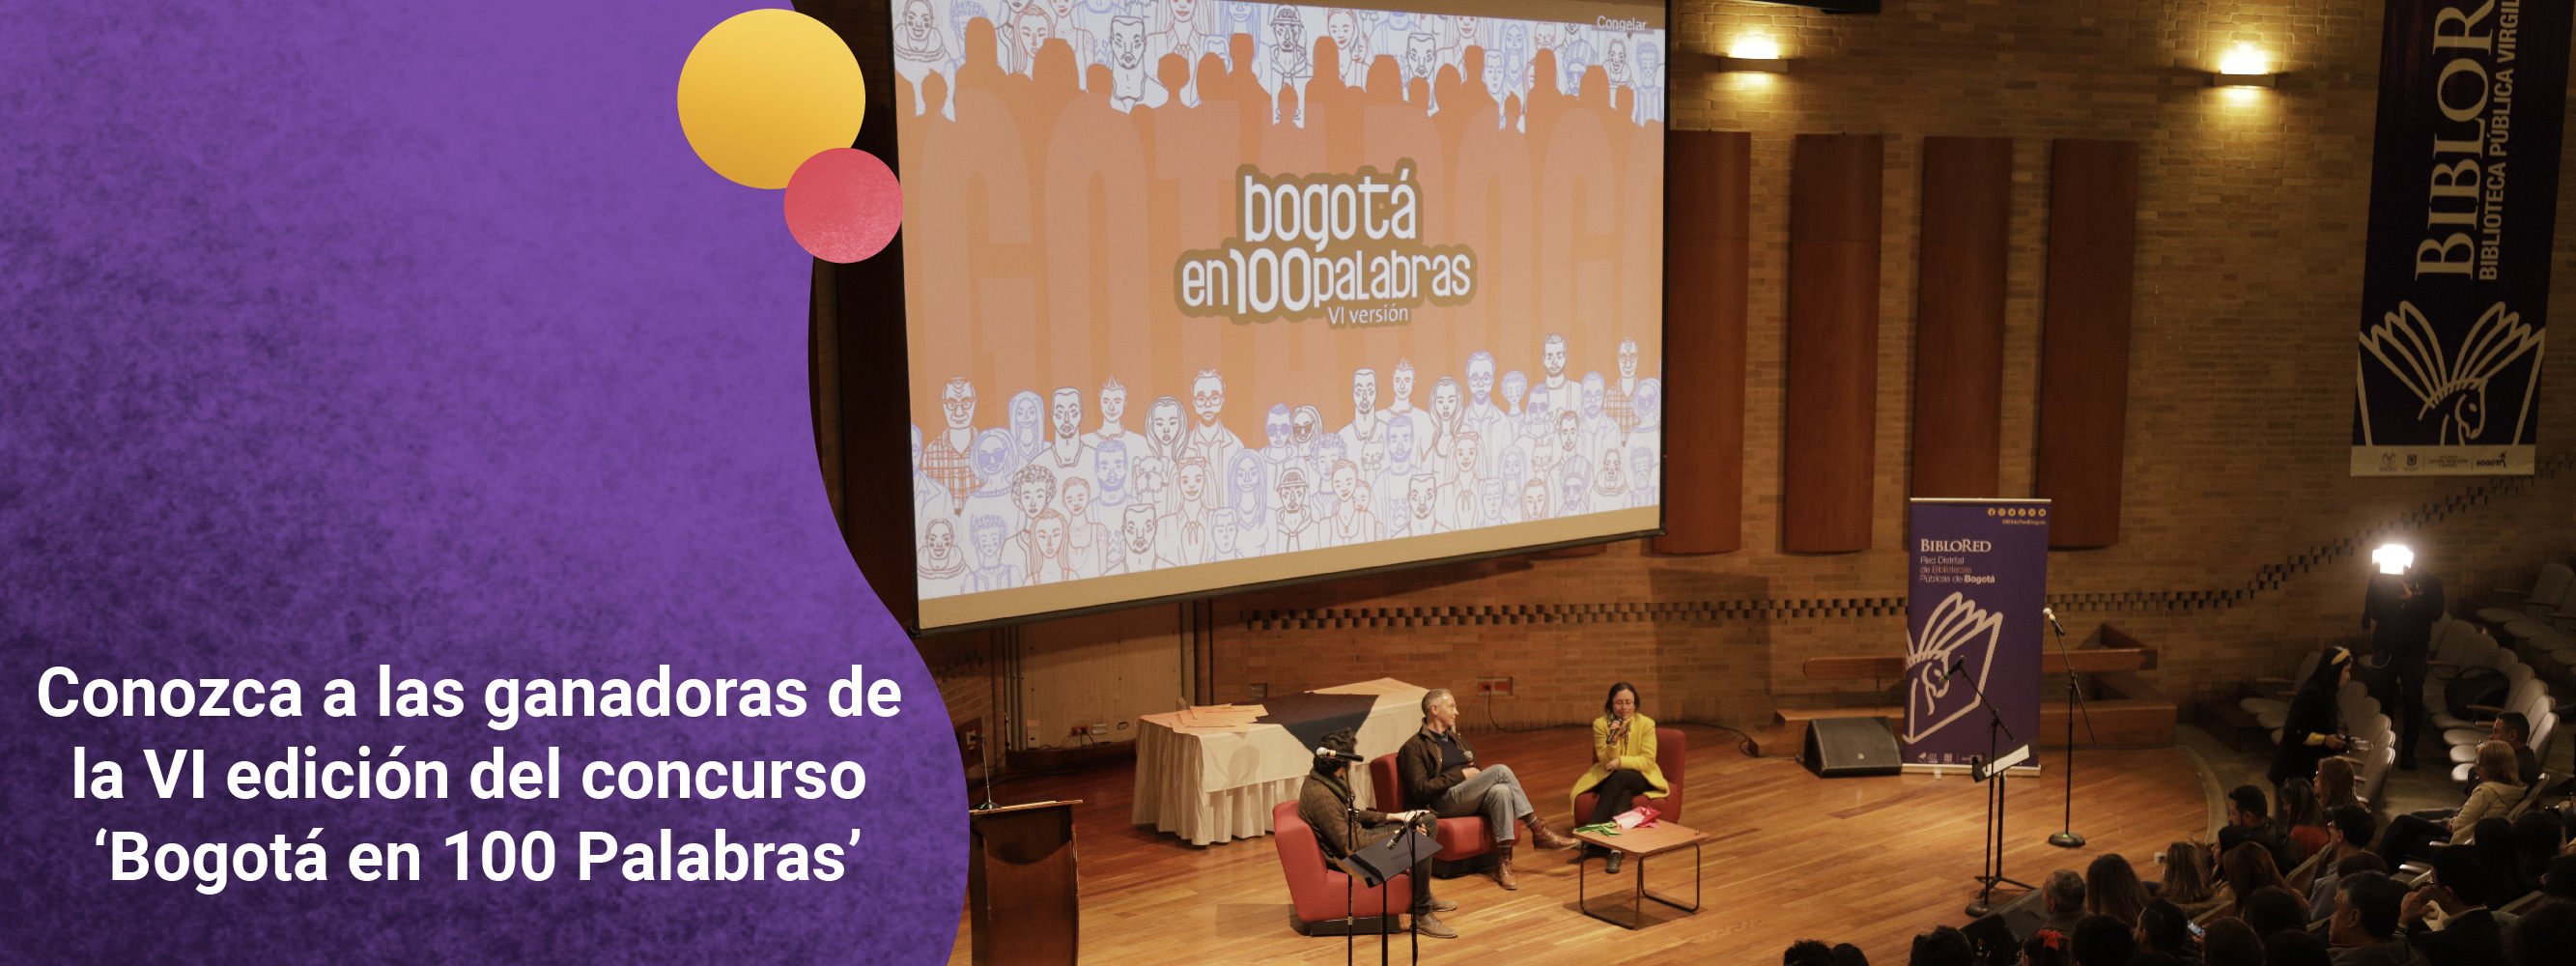 Conozca a las ganadoras de la sexta edición del concurso ‘Bogotá en 100 Palabras’